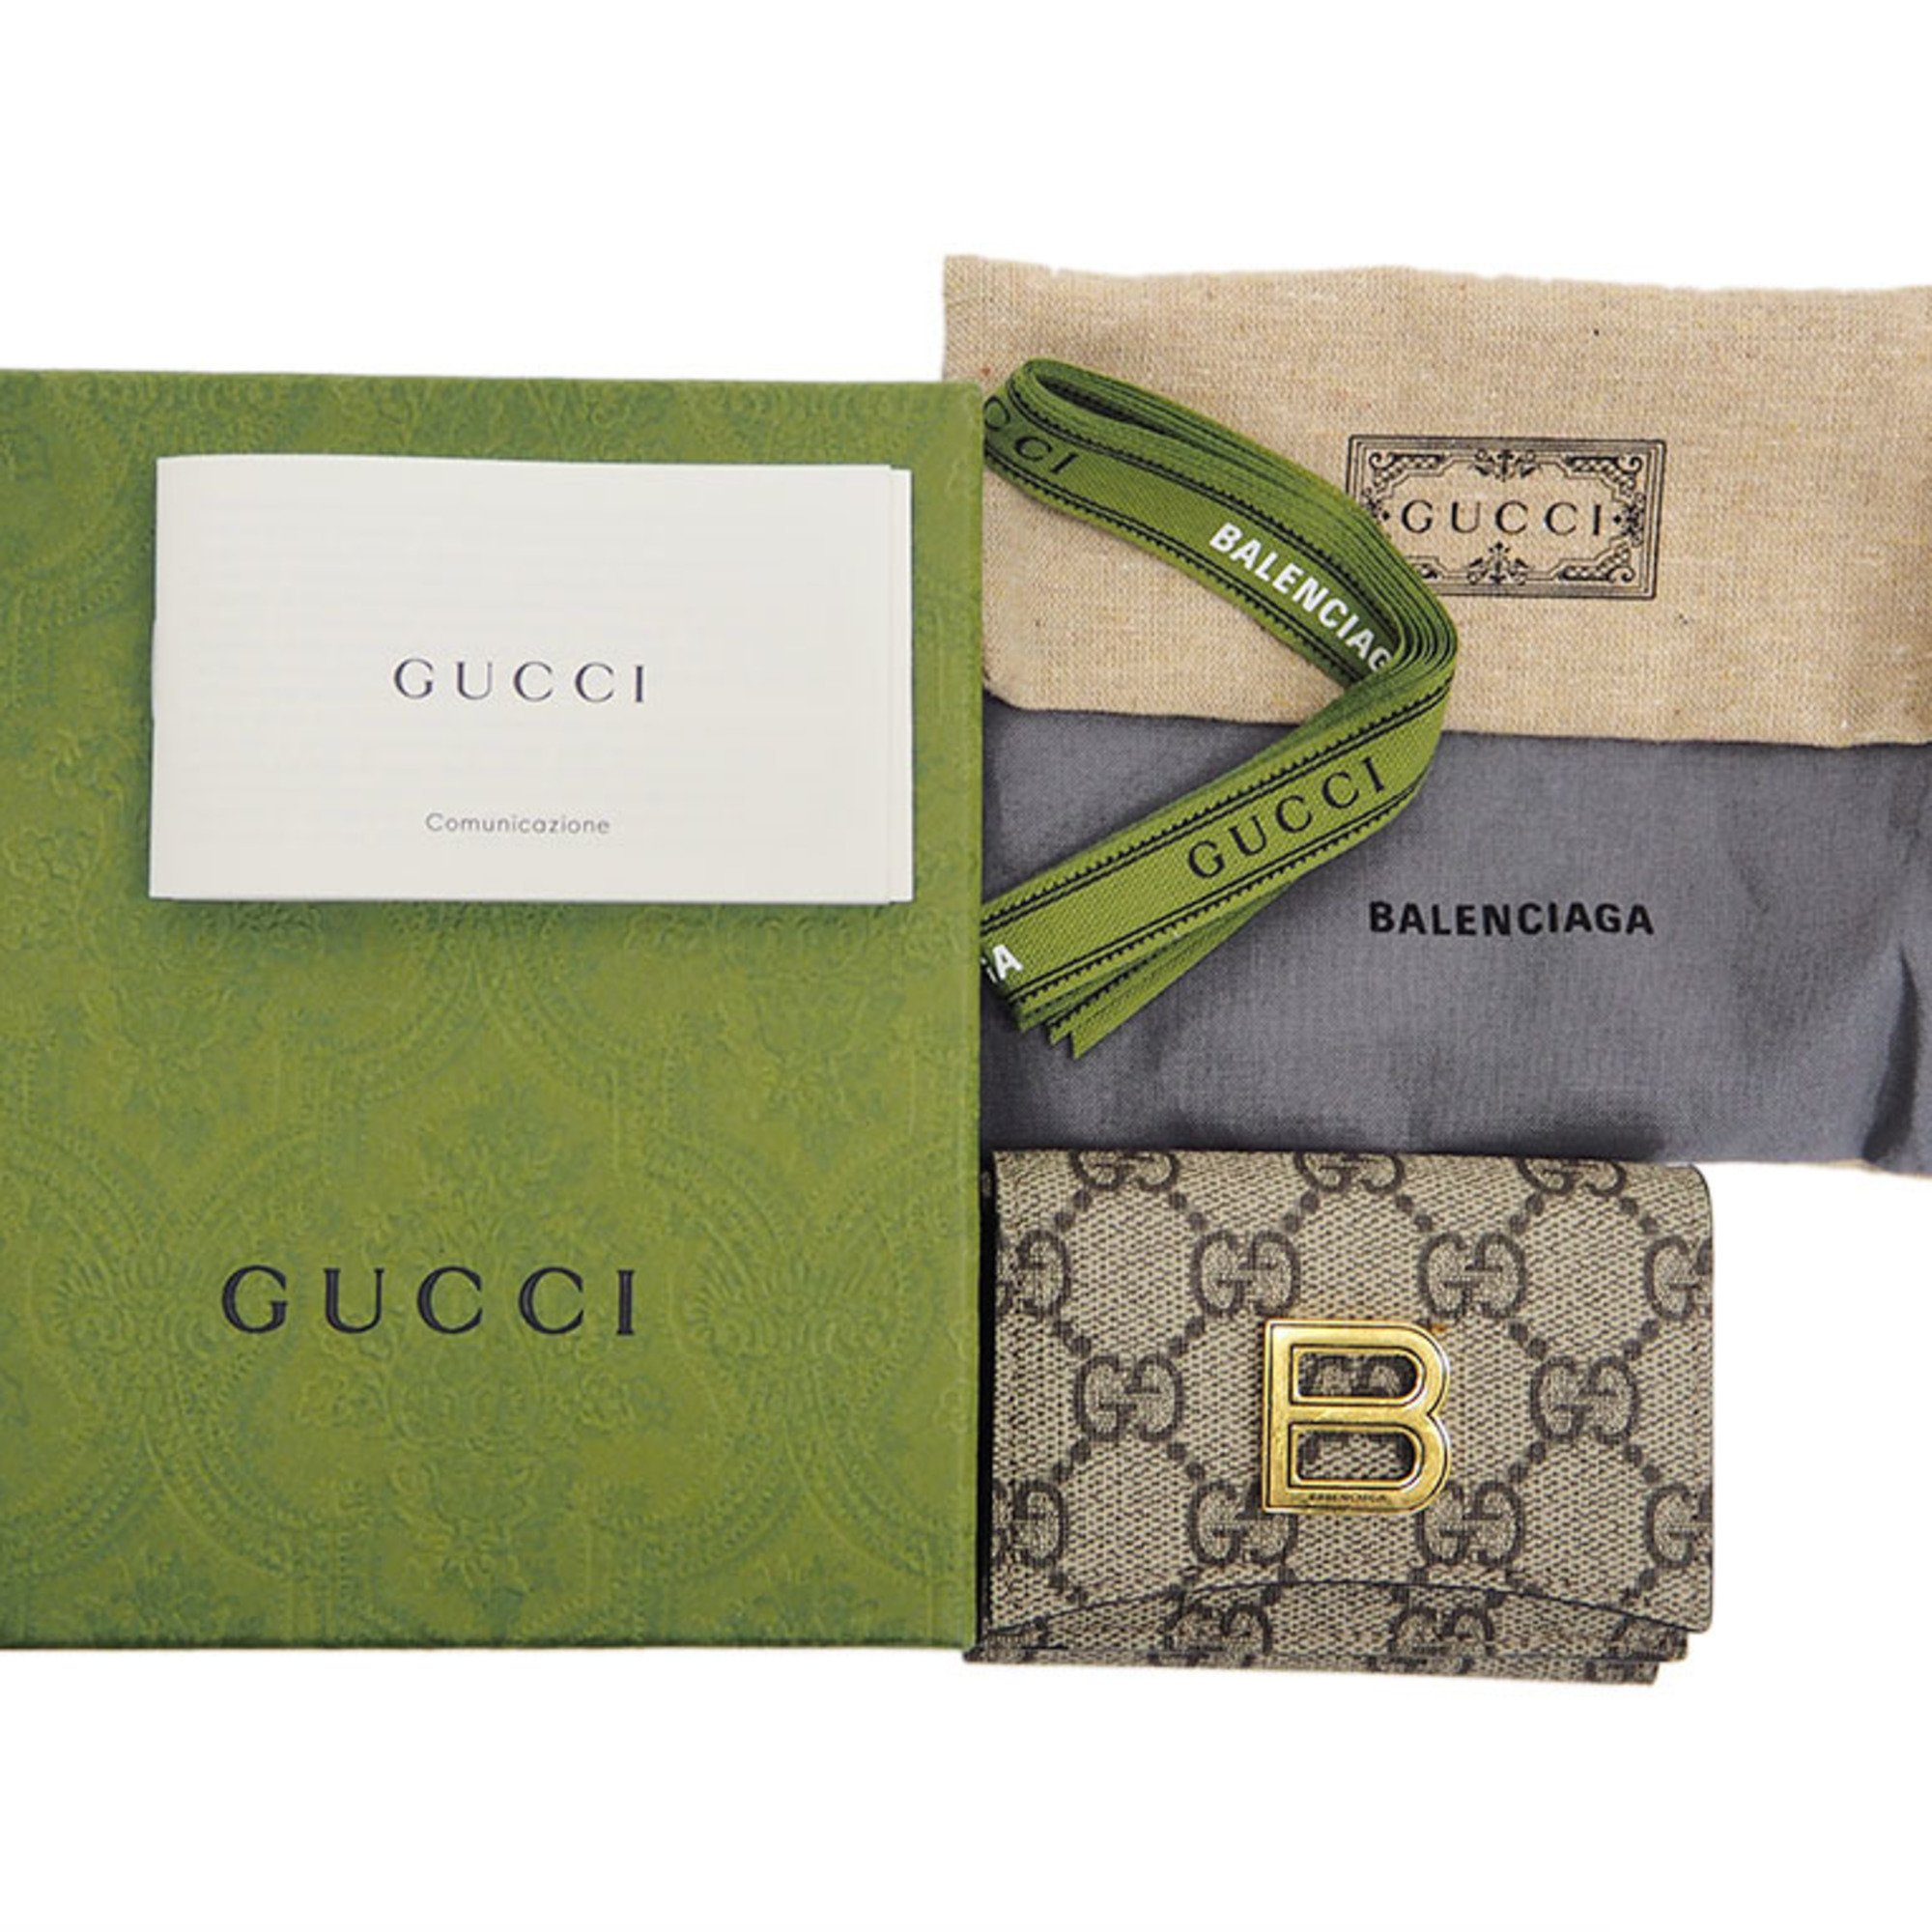 Gucci GUCCI x BALENCIAGA Hacker Project Mini 681700 Trifold Wallet Collaboration Women's Men's GG Supreme Balenciaga